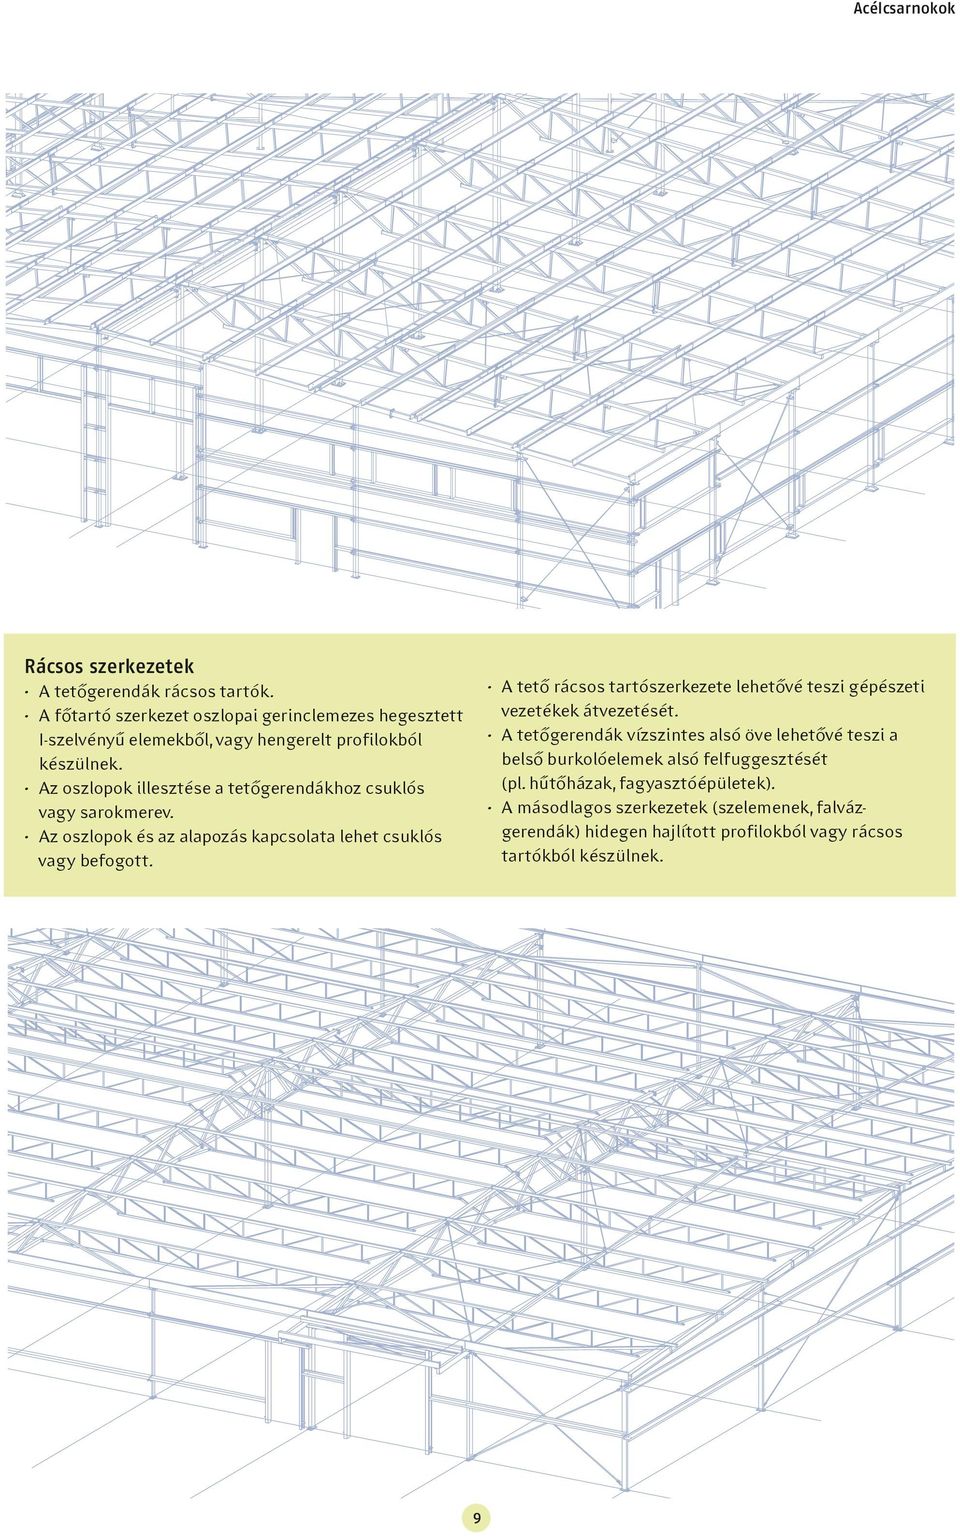 Az oszlopok illesztése a tetőgerendákhoz csuklós vagy sarokmerev. Az oszlopok és az alapozás kapcsolata lehet csuklós vagy befogott.